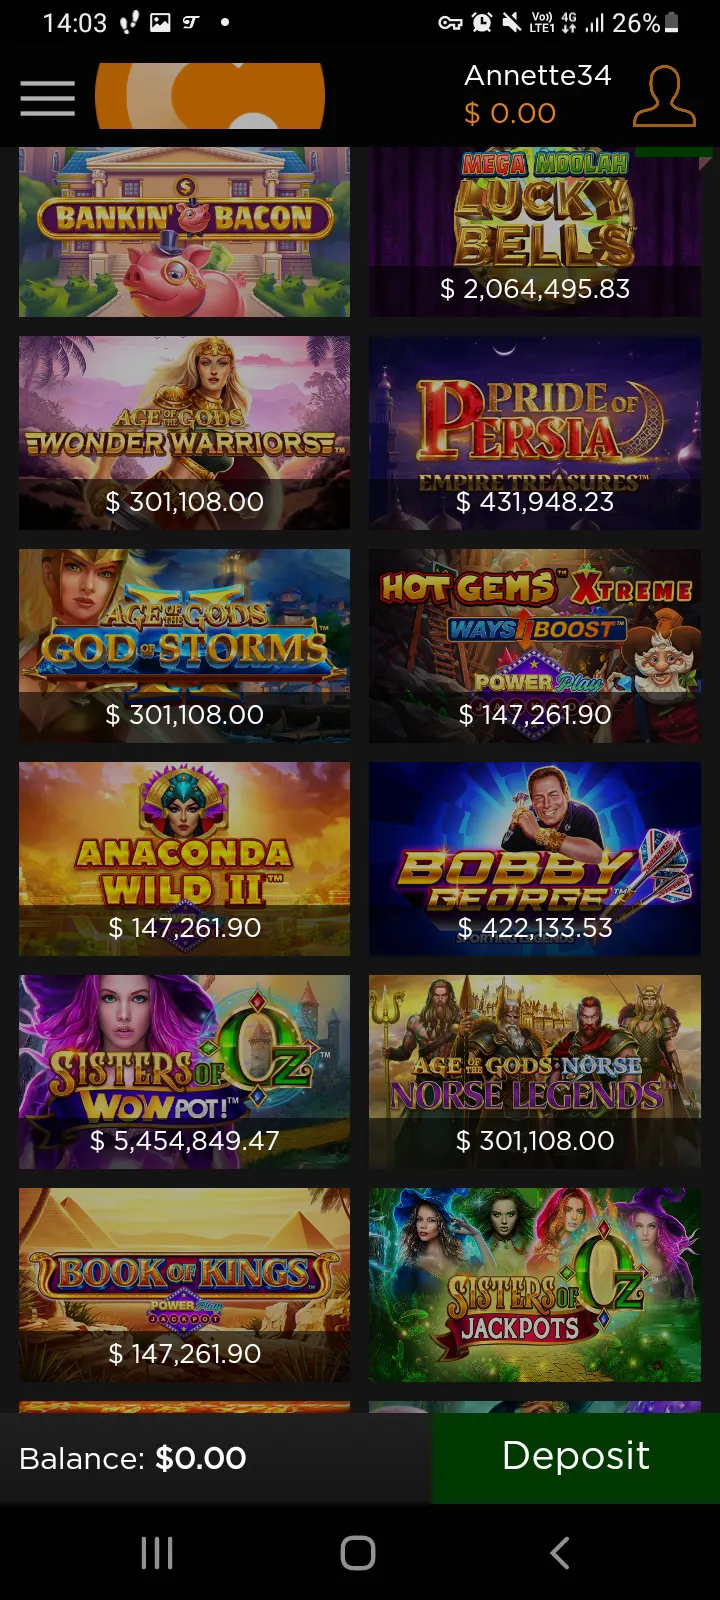 Casino.com app screenshot 5